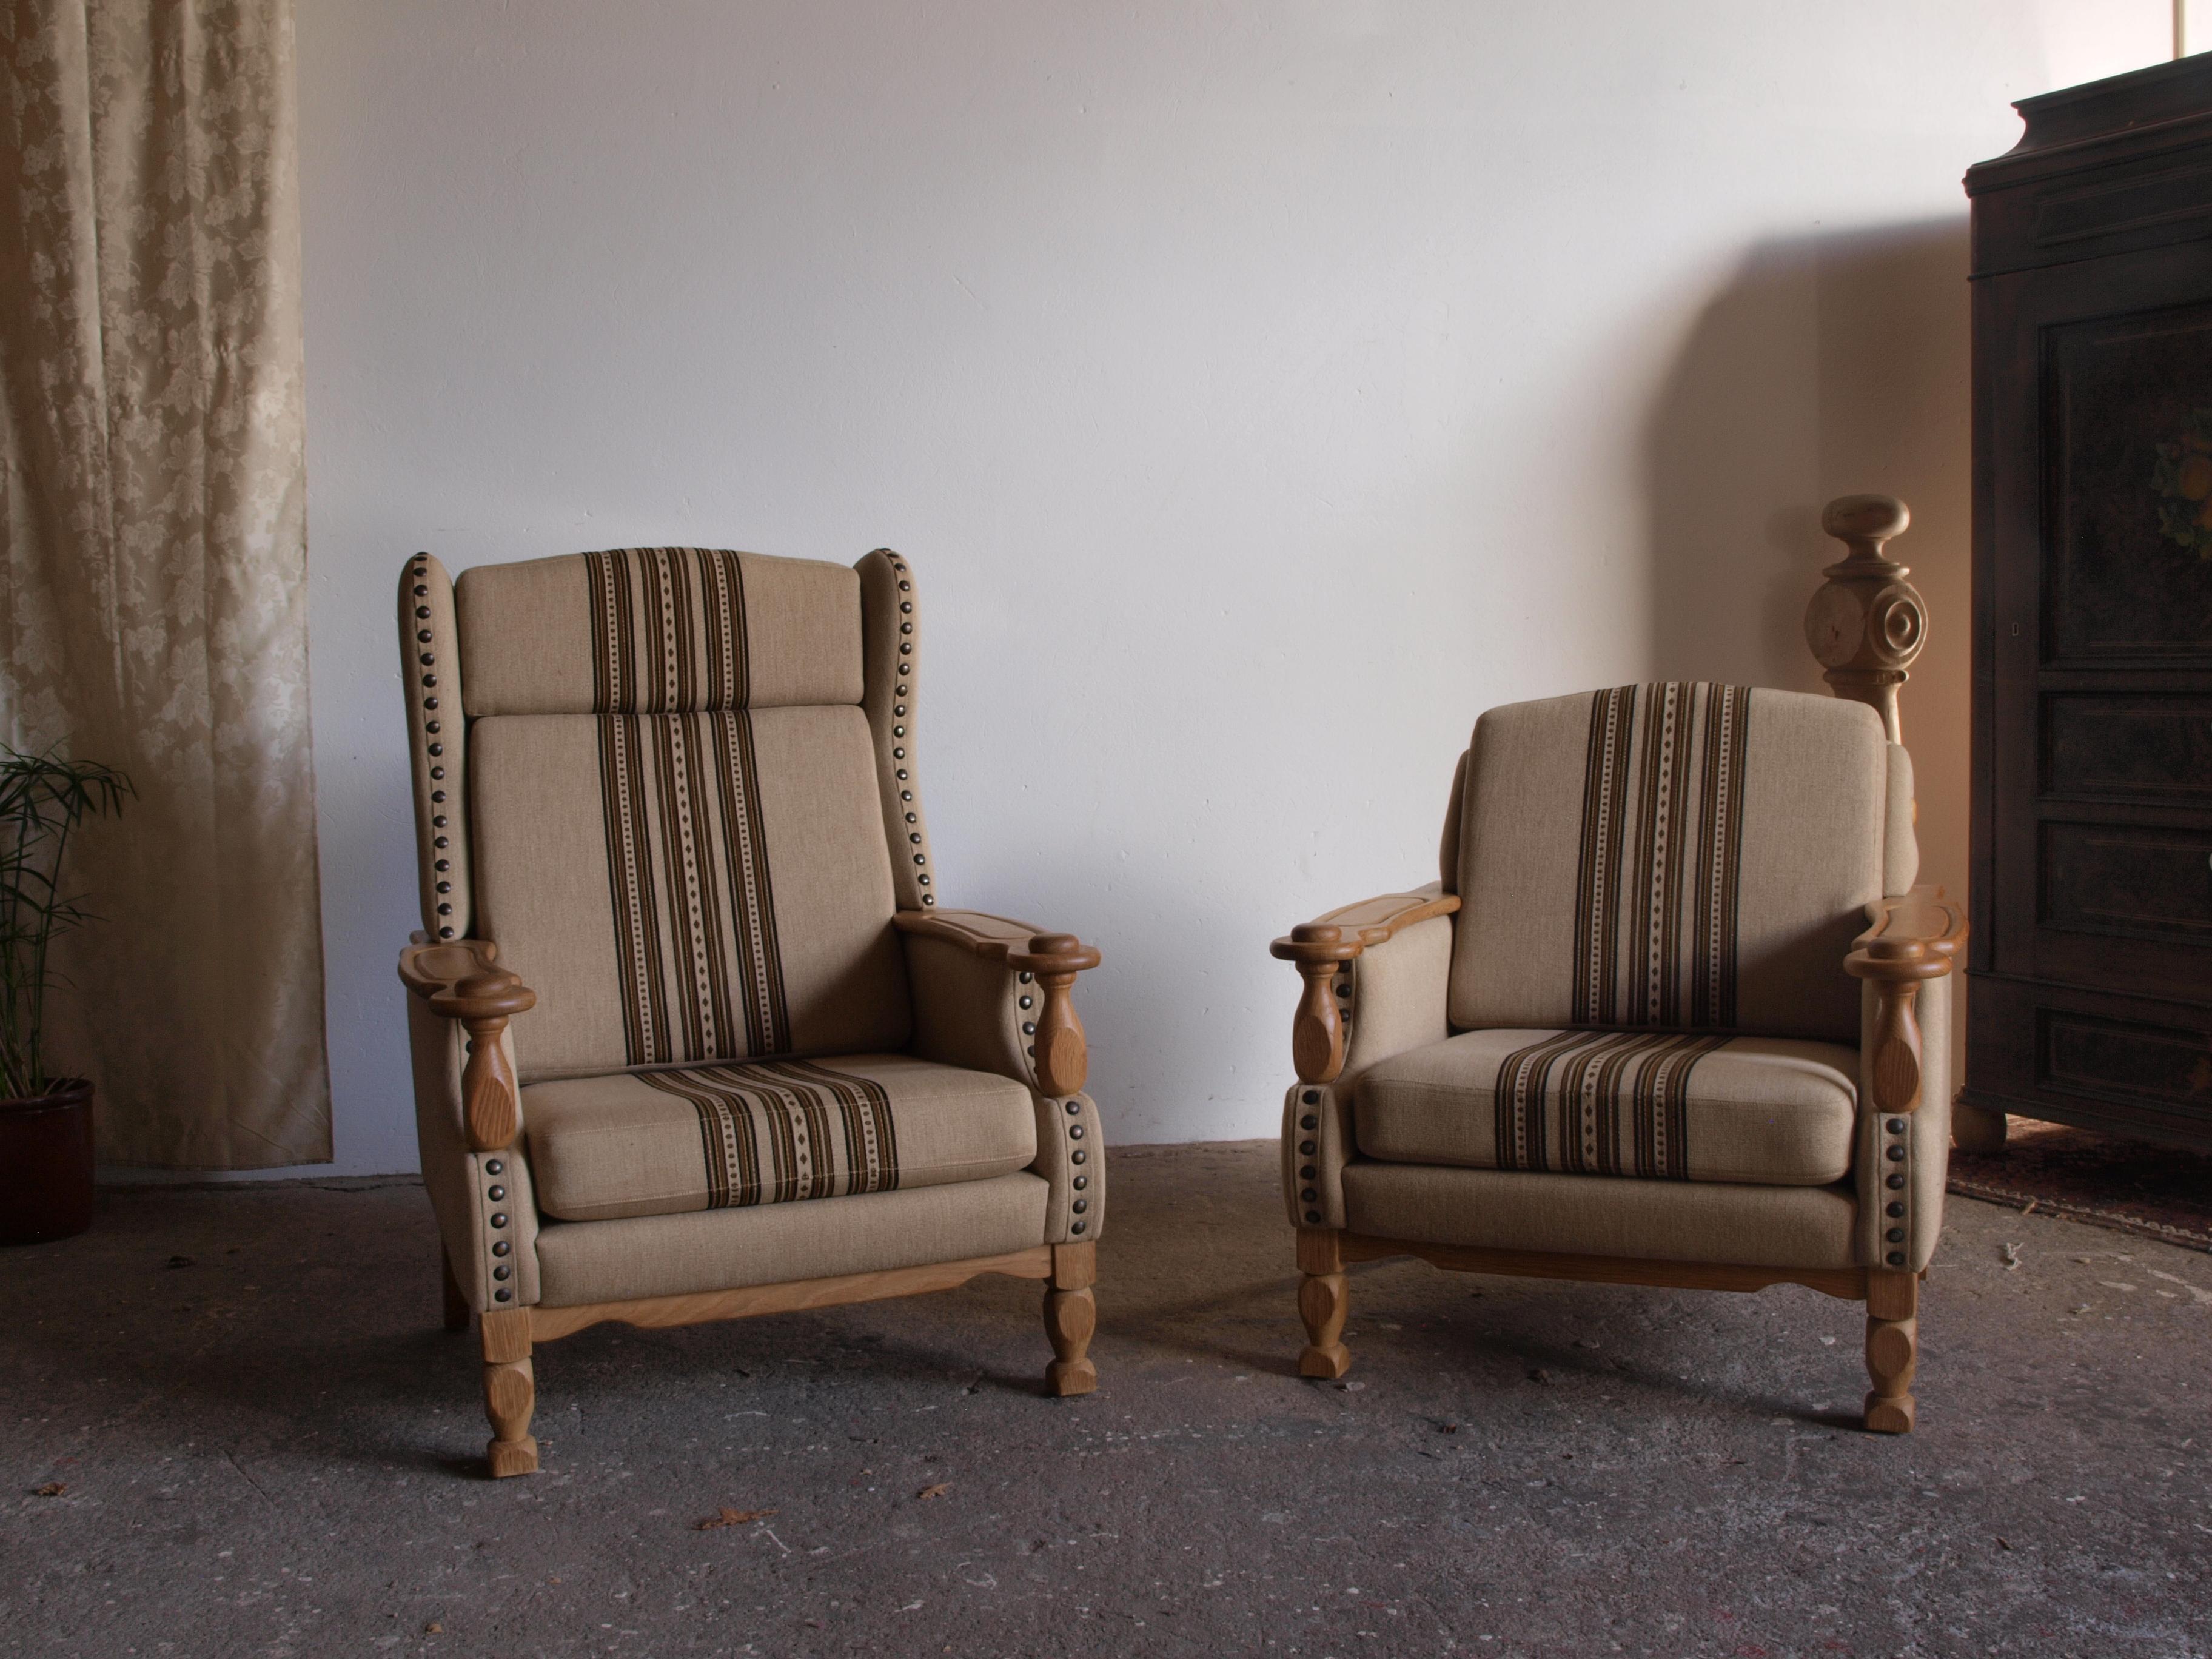 Un magnifique ensemble de chaises longues danoises, ressemblant au style de HENRY, forme une rare trouvaille sculpturale. Ces chaises, fabriquées en chêne, ont conservé leur revêtement d'origine en laine savak. Créé par un ébéniste danois